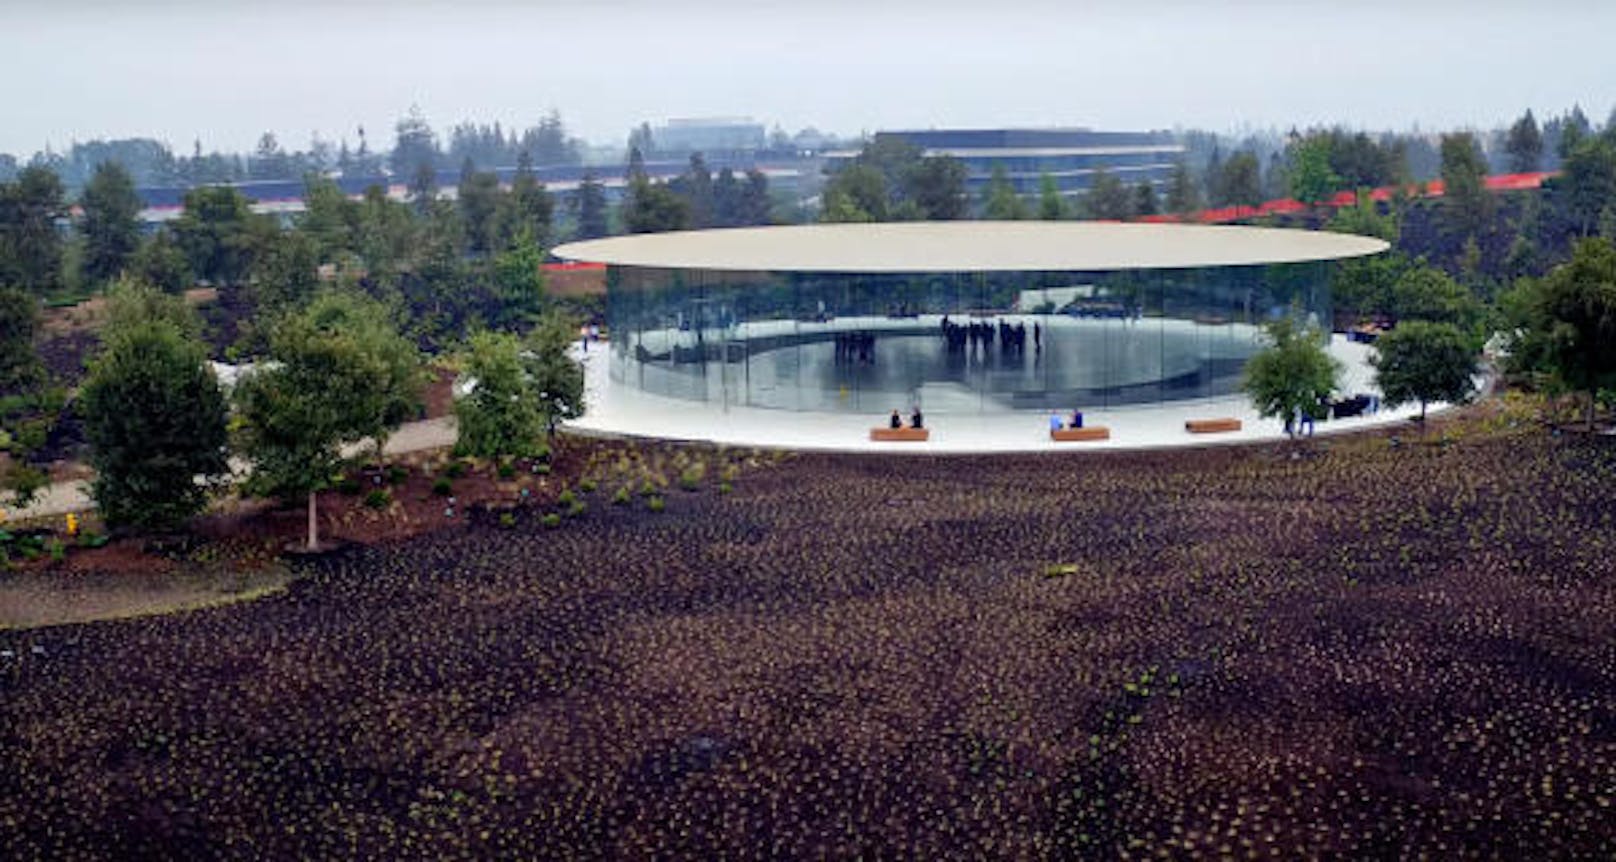 Das Steve Jobs Theater - benannt nach dem verstorbenen Firmengründer und Visionär - ist Teil des Apple Campus in Cupertino